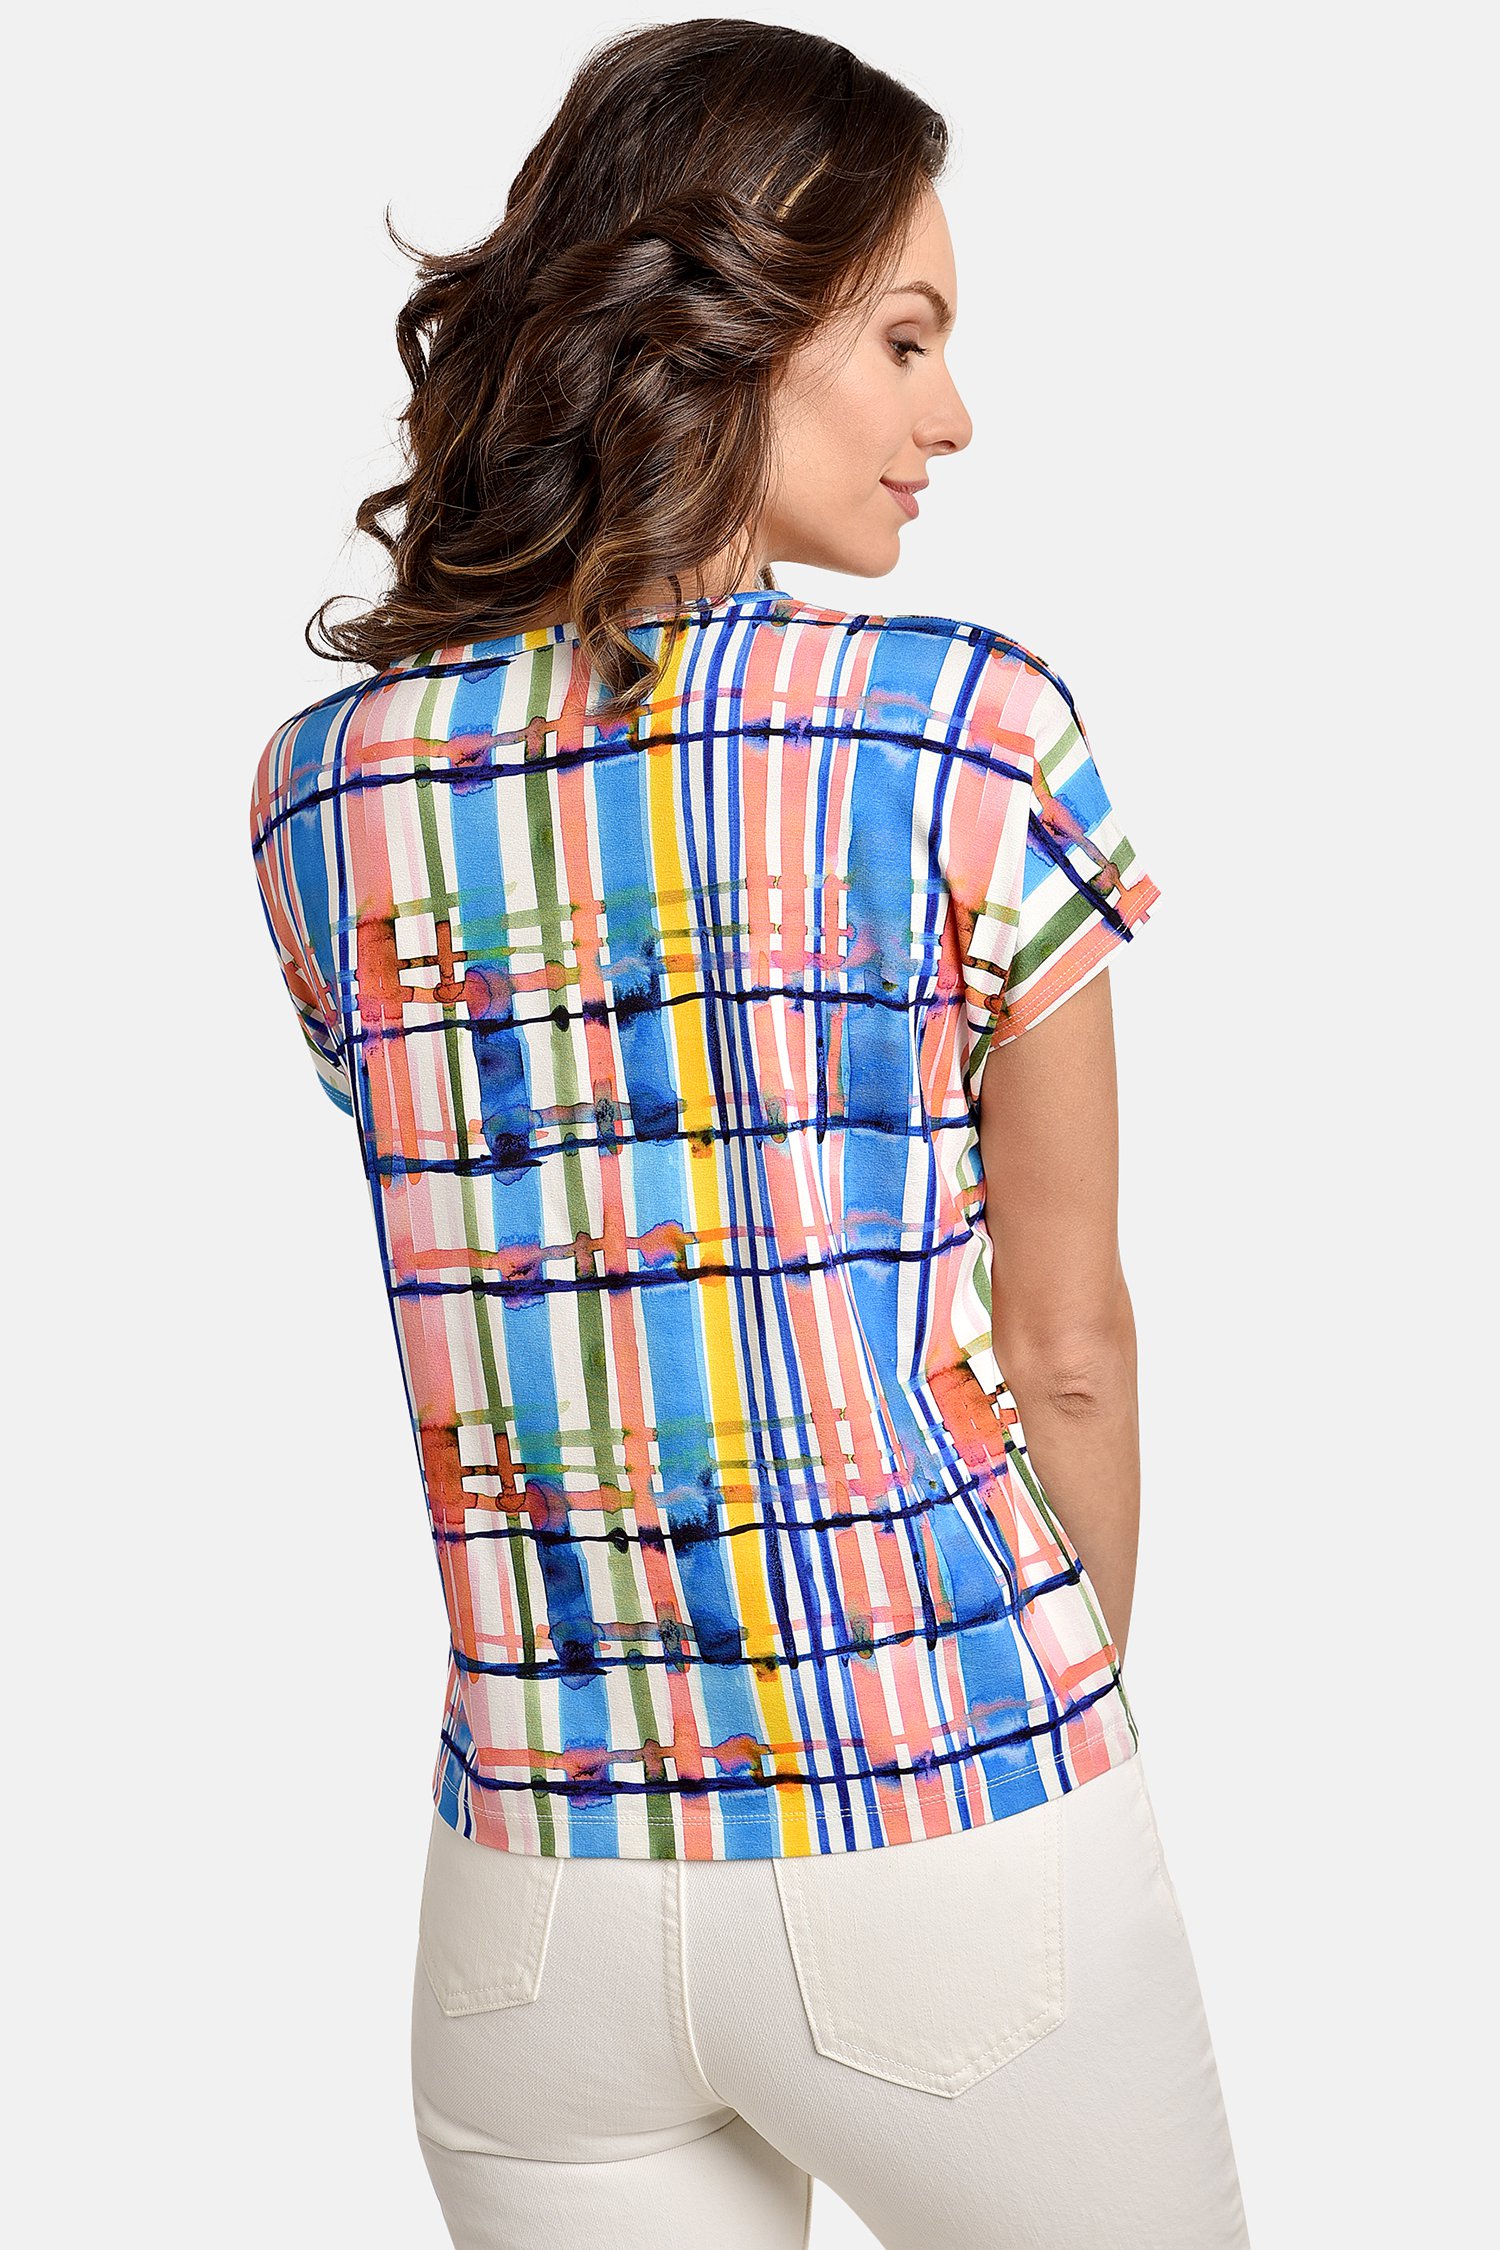 T-shirt met kleurrijke geruite print van Bicalla voor Dames